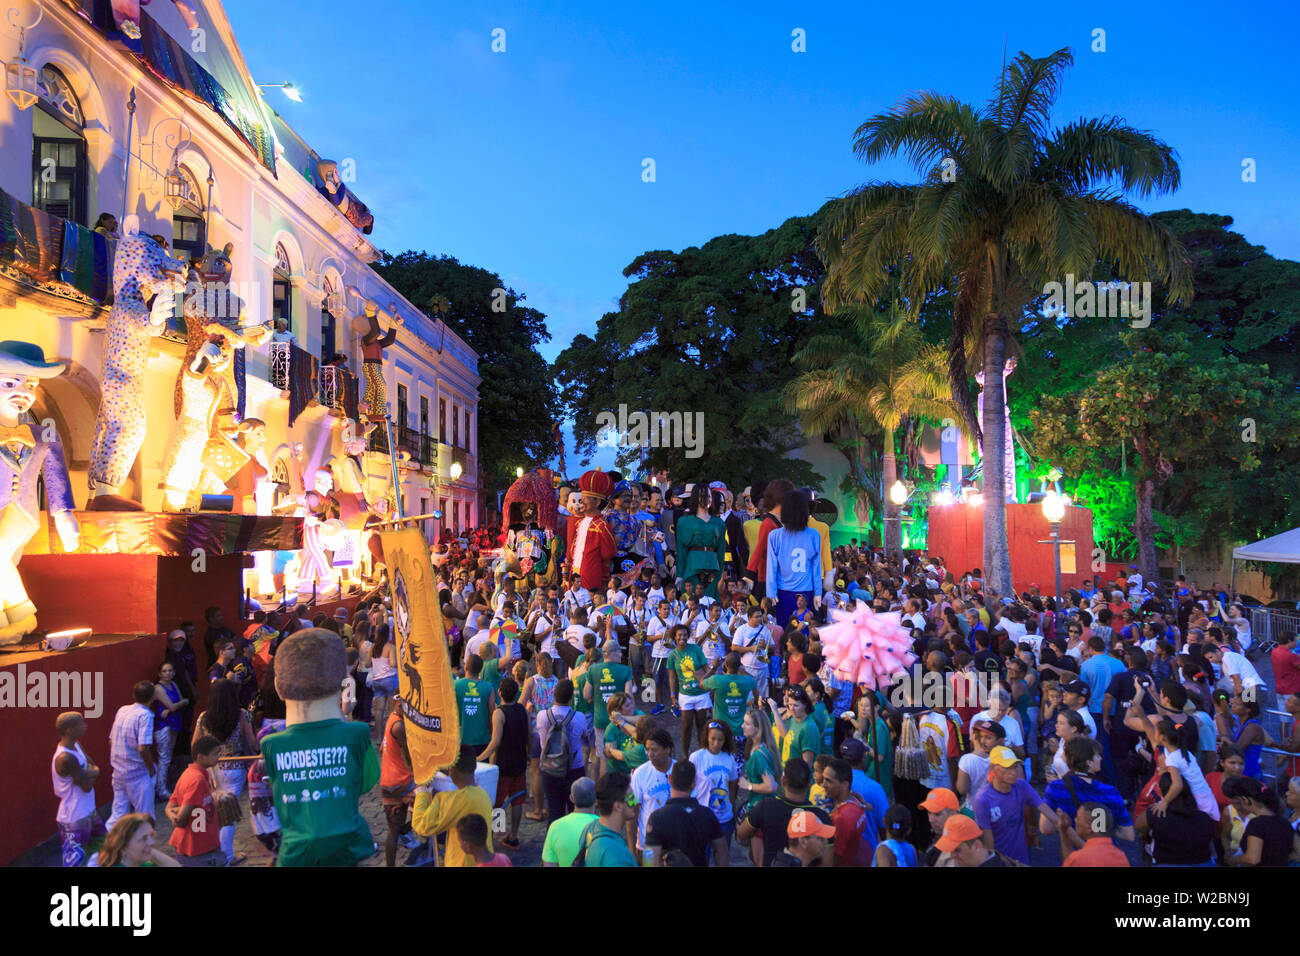 Olinda, Pernambuco, Brasil La Ciudad Vieja (UNESCO), marionetas gigantes del sitio durante la celebración del Carnaval Foto de stock